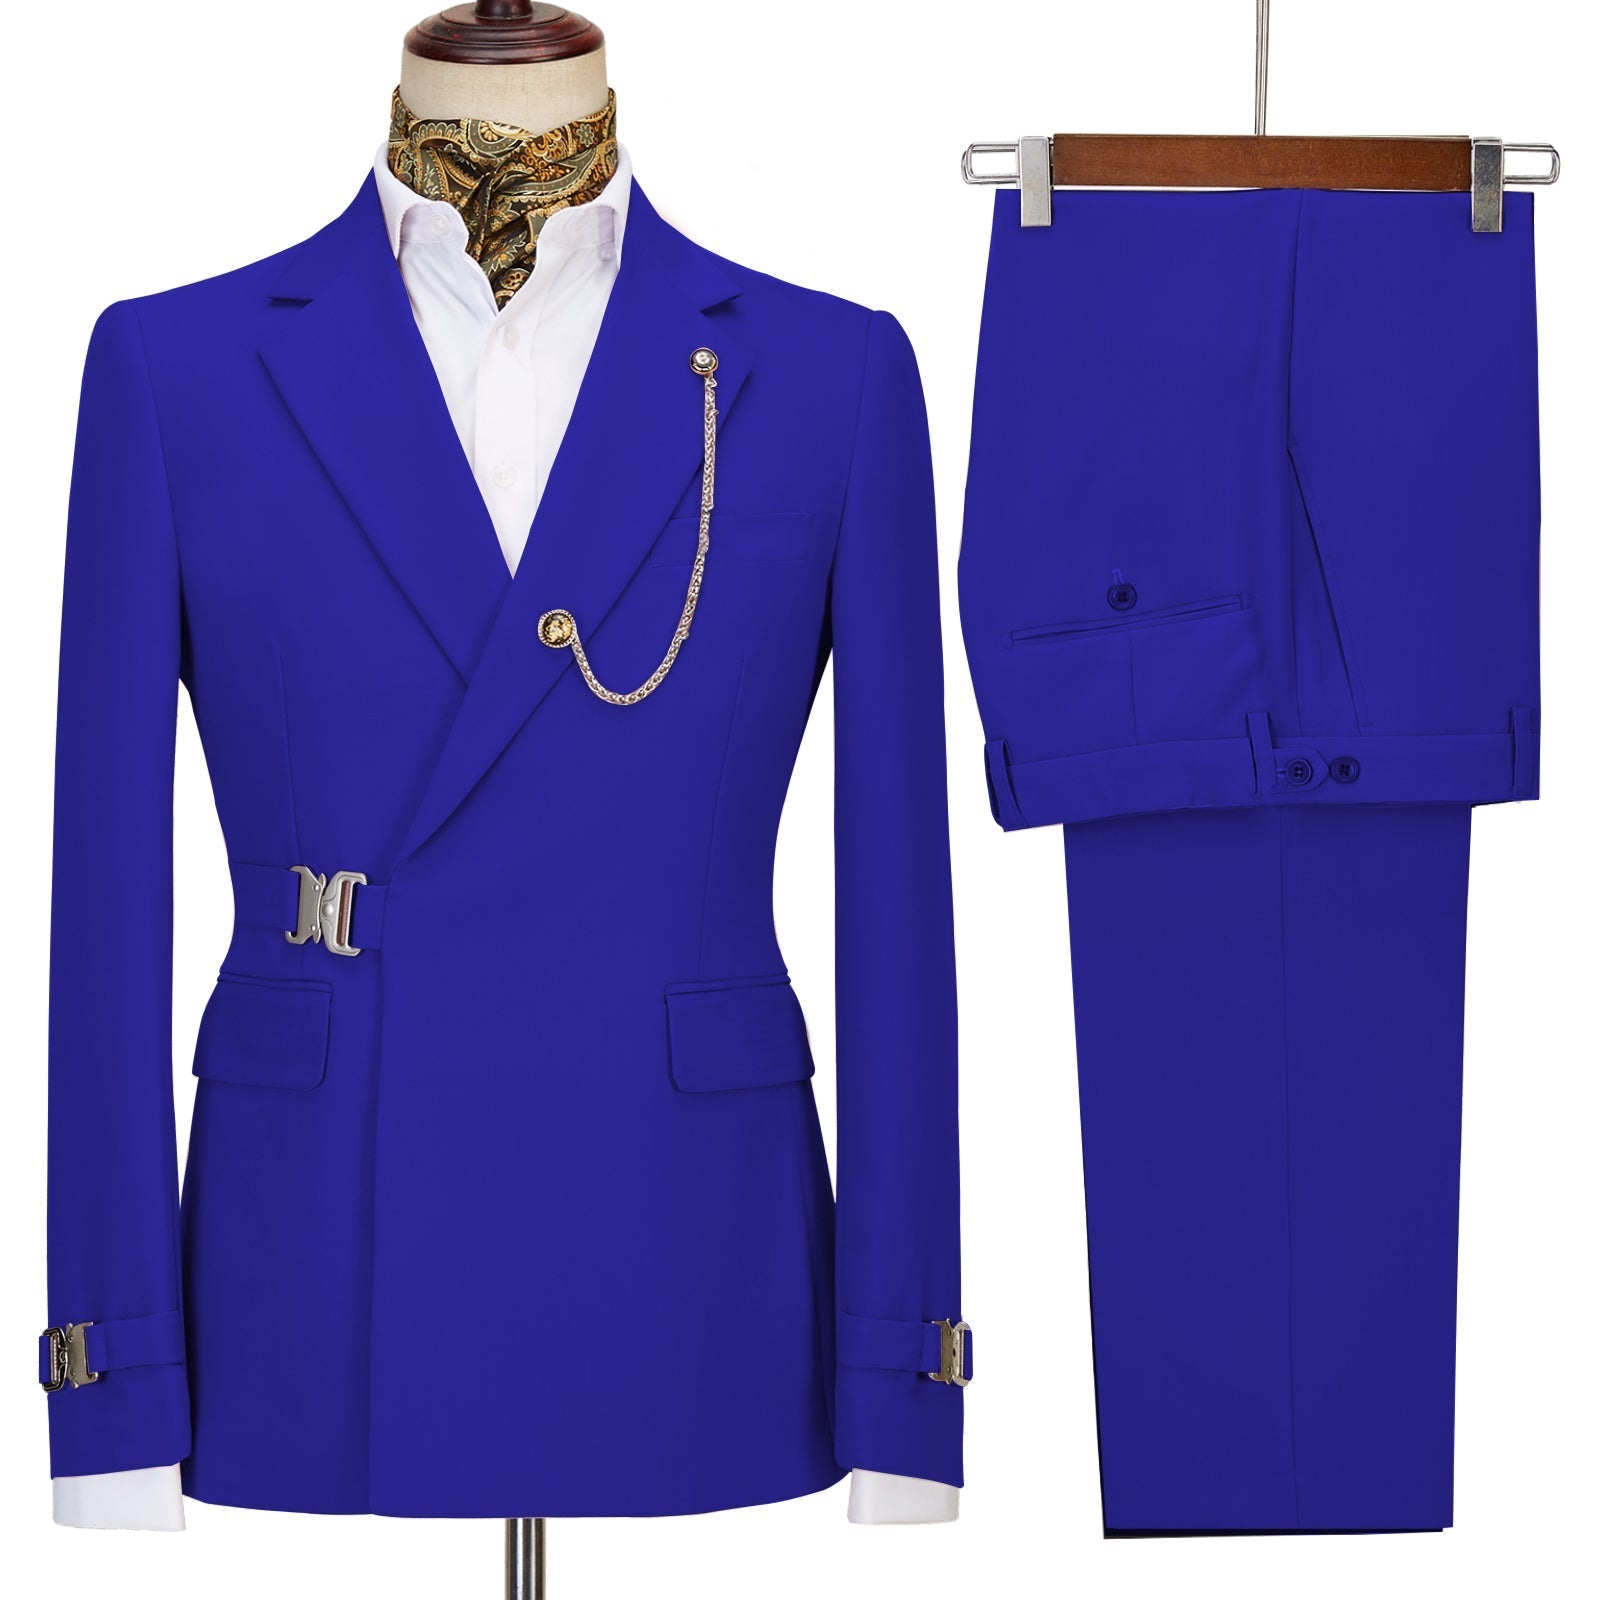 Formal Men's 2 Piece Men's Suit Regular Fit Notched Lapel Tuxedo For W ...